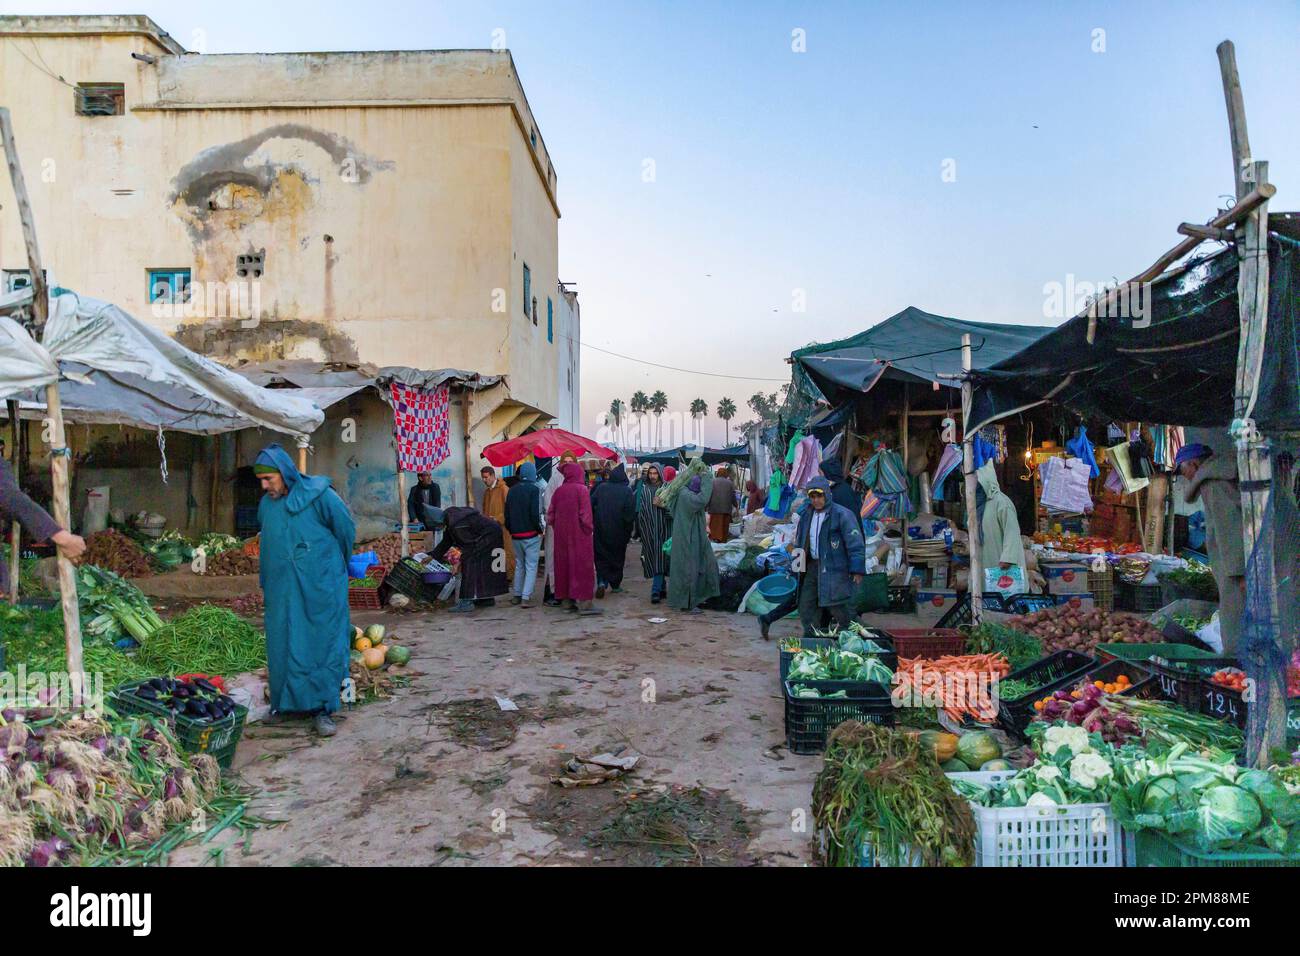 Maroc, Haut Atlas, Marrakech Safi, Hait-Drâa, le marché Havait-Dri est l'un des plus importants du sud du Maroc Banque D'Images